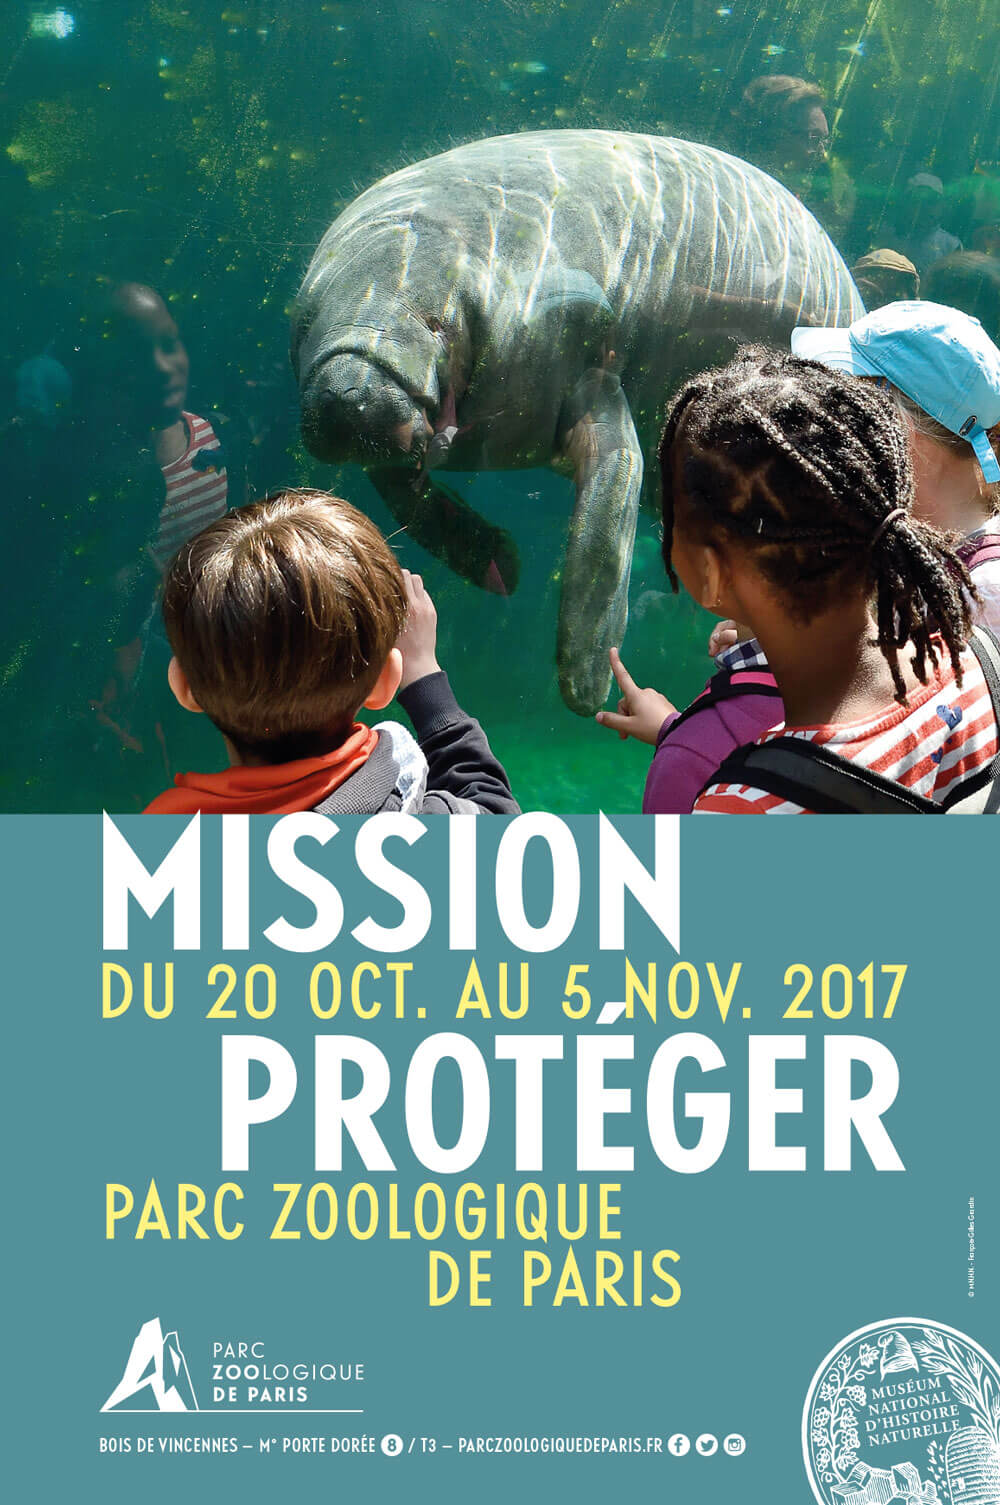 Communication parc zoologique de Paris